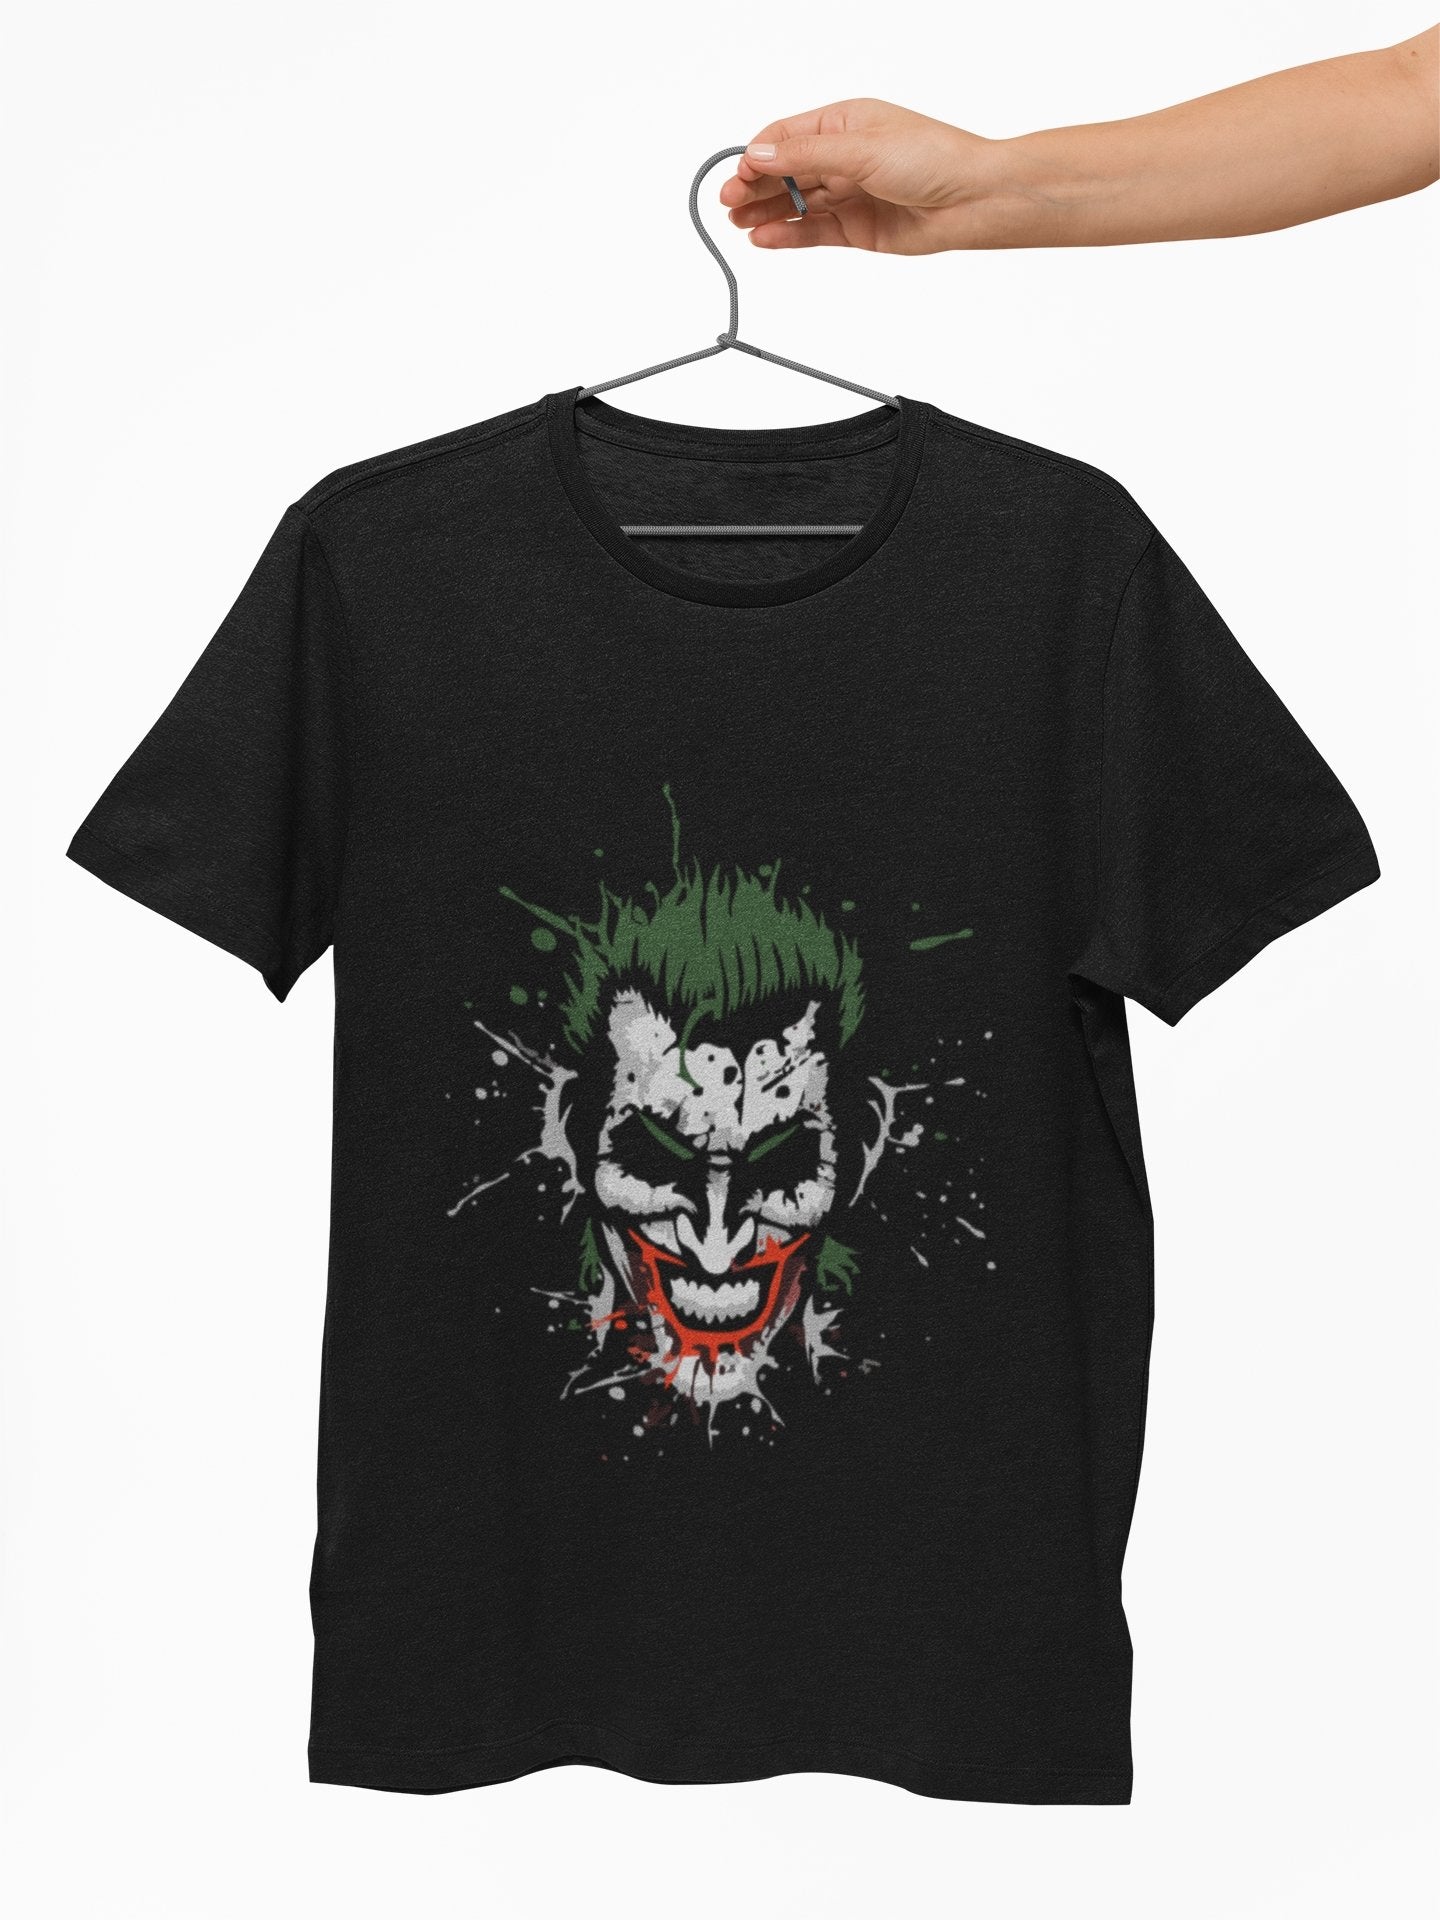 Joker Inspired T shirt - Insane Tees